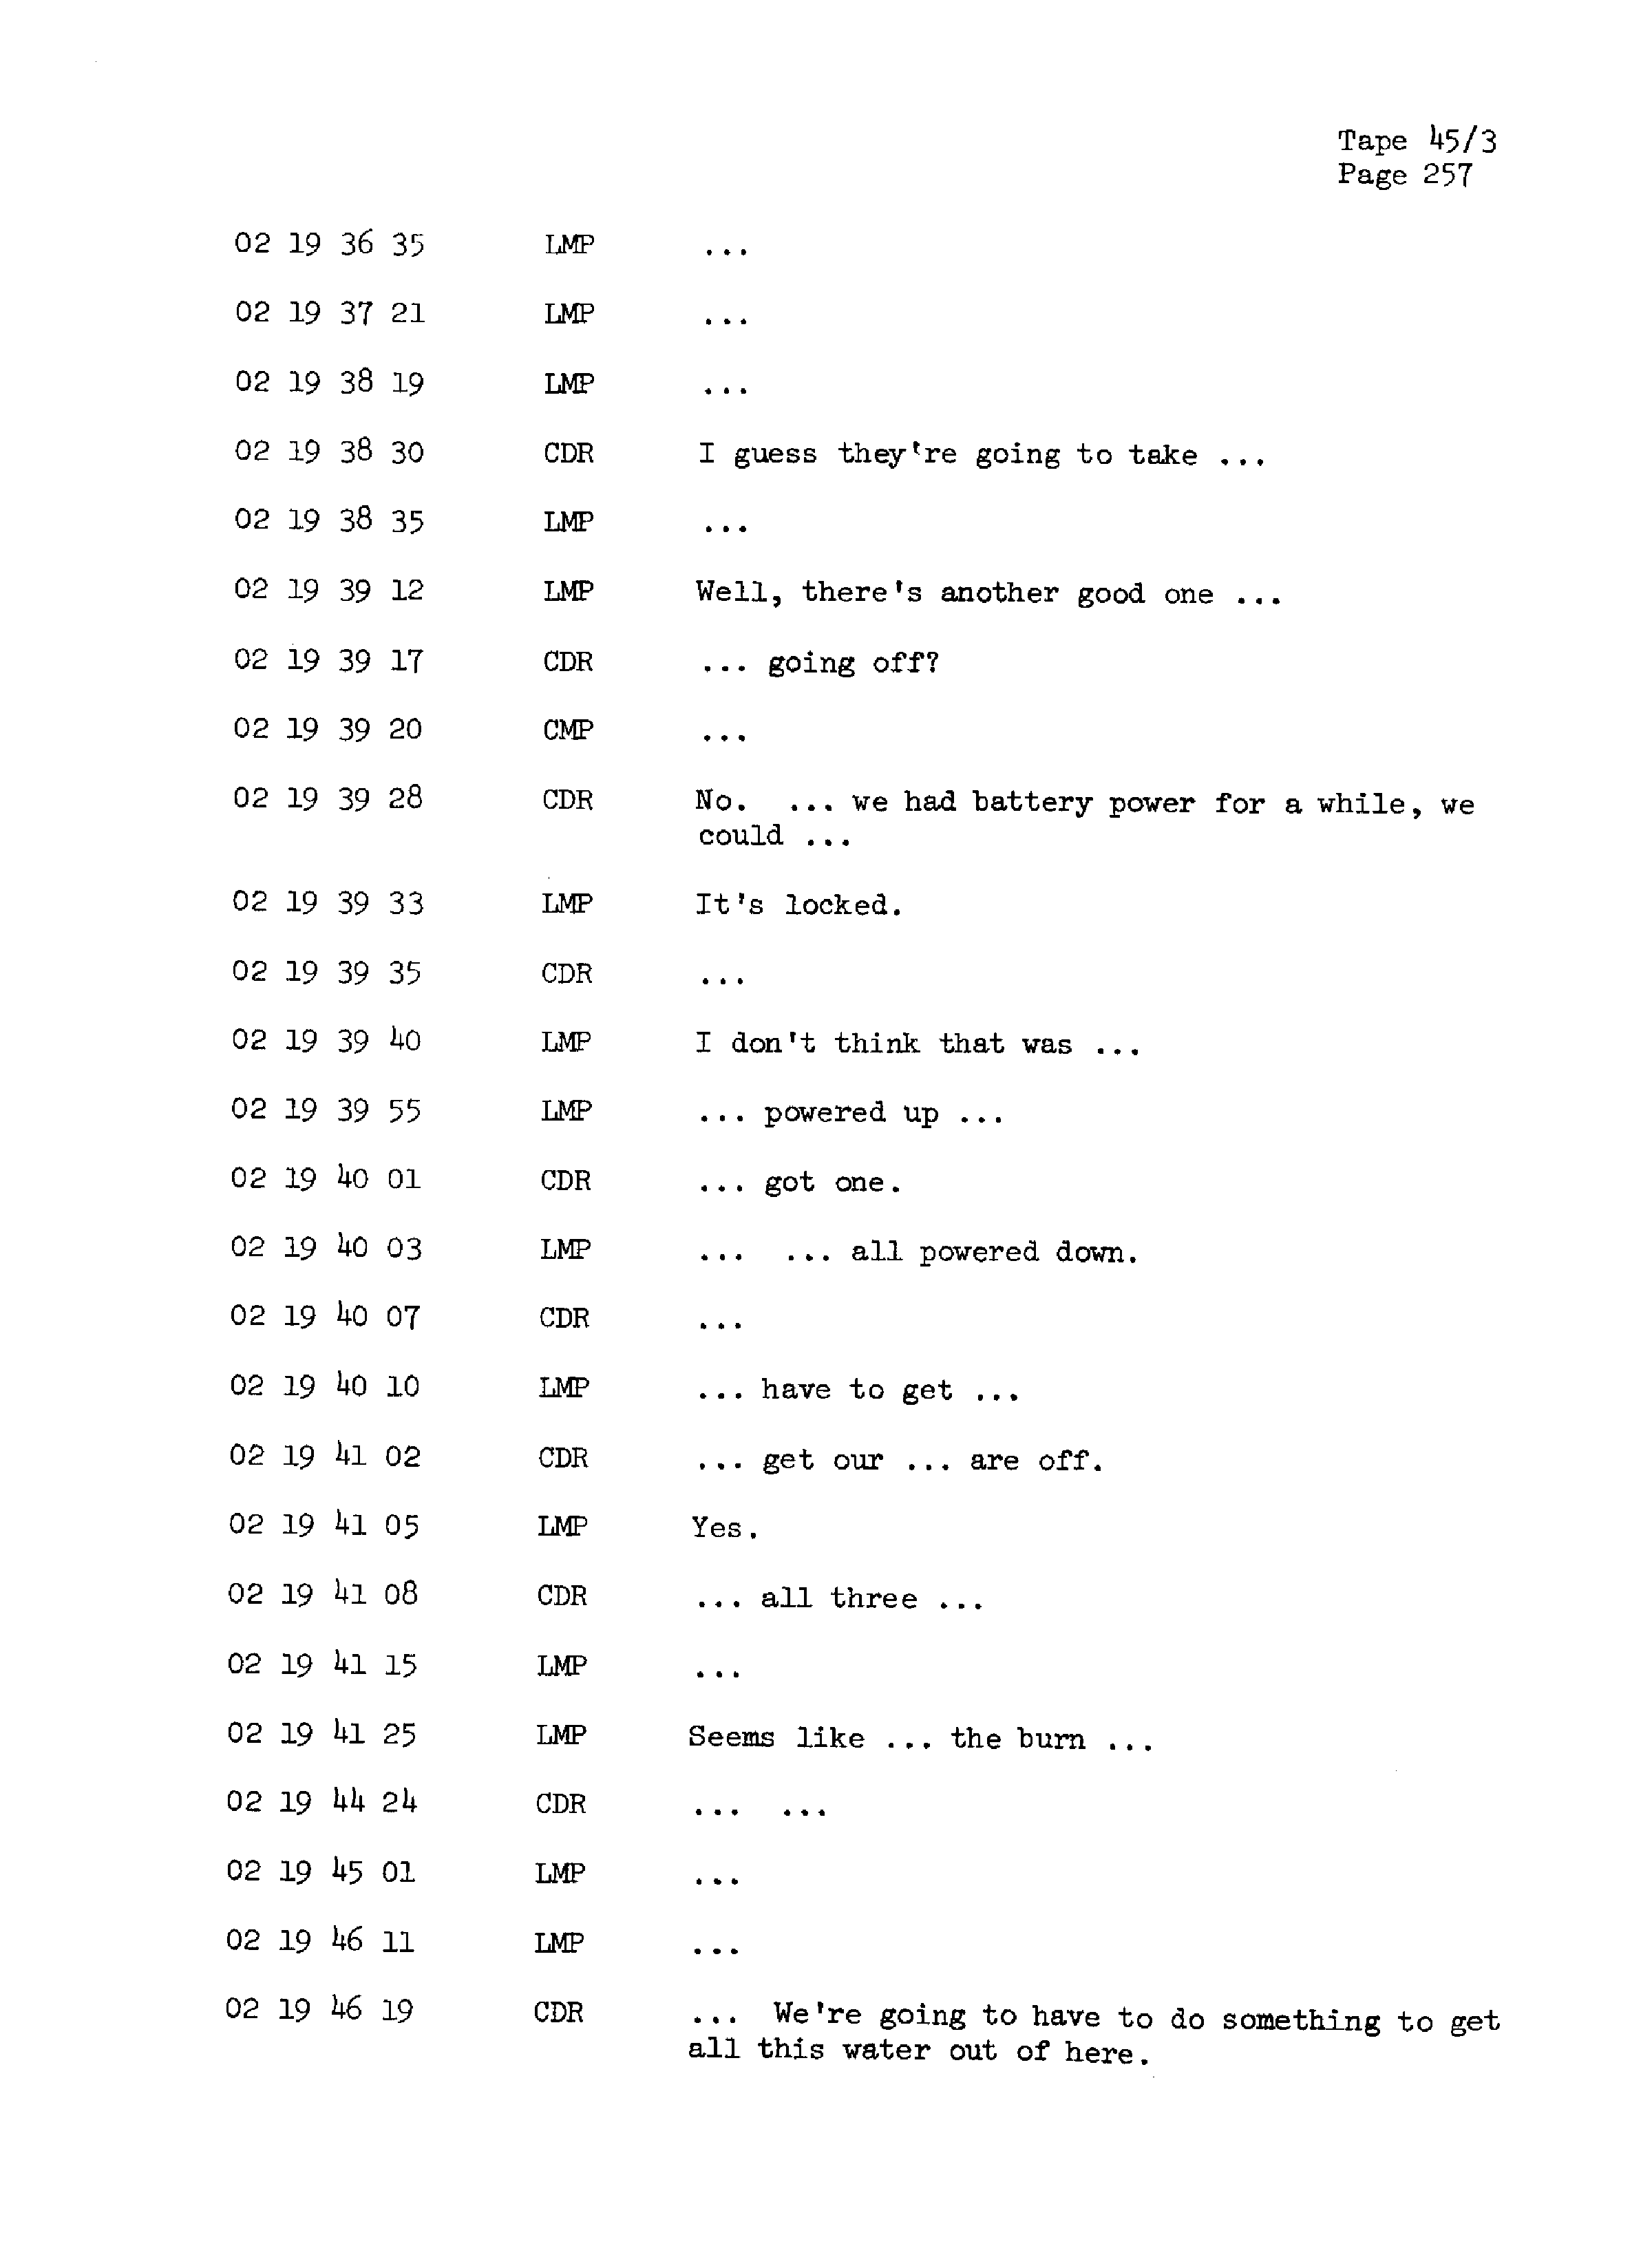 Page 264 of Apollo 13’s original transcript